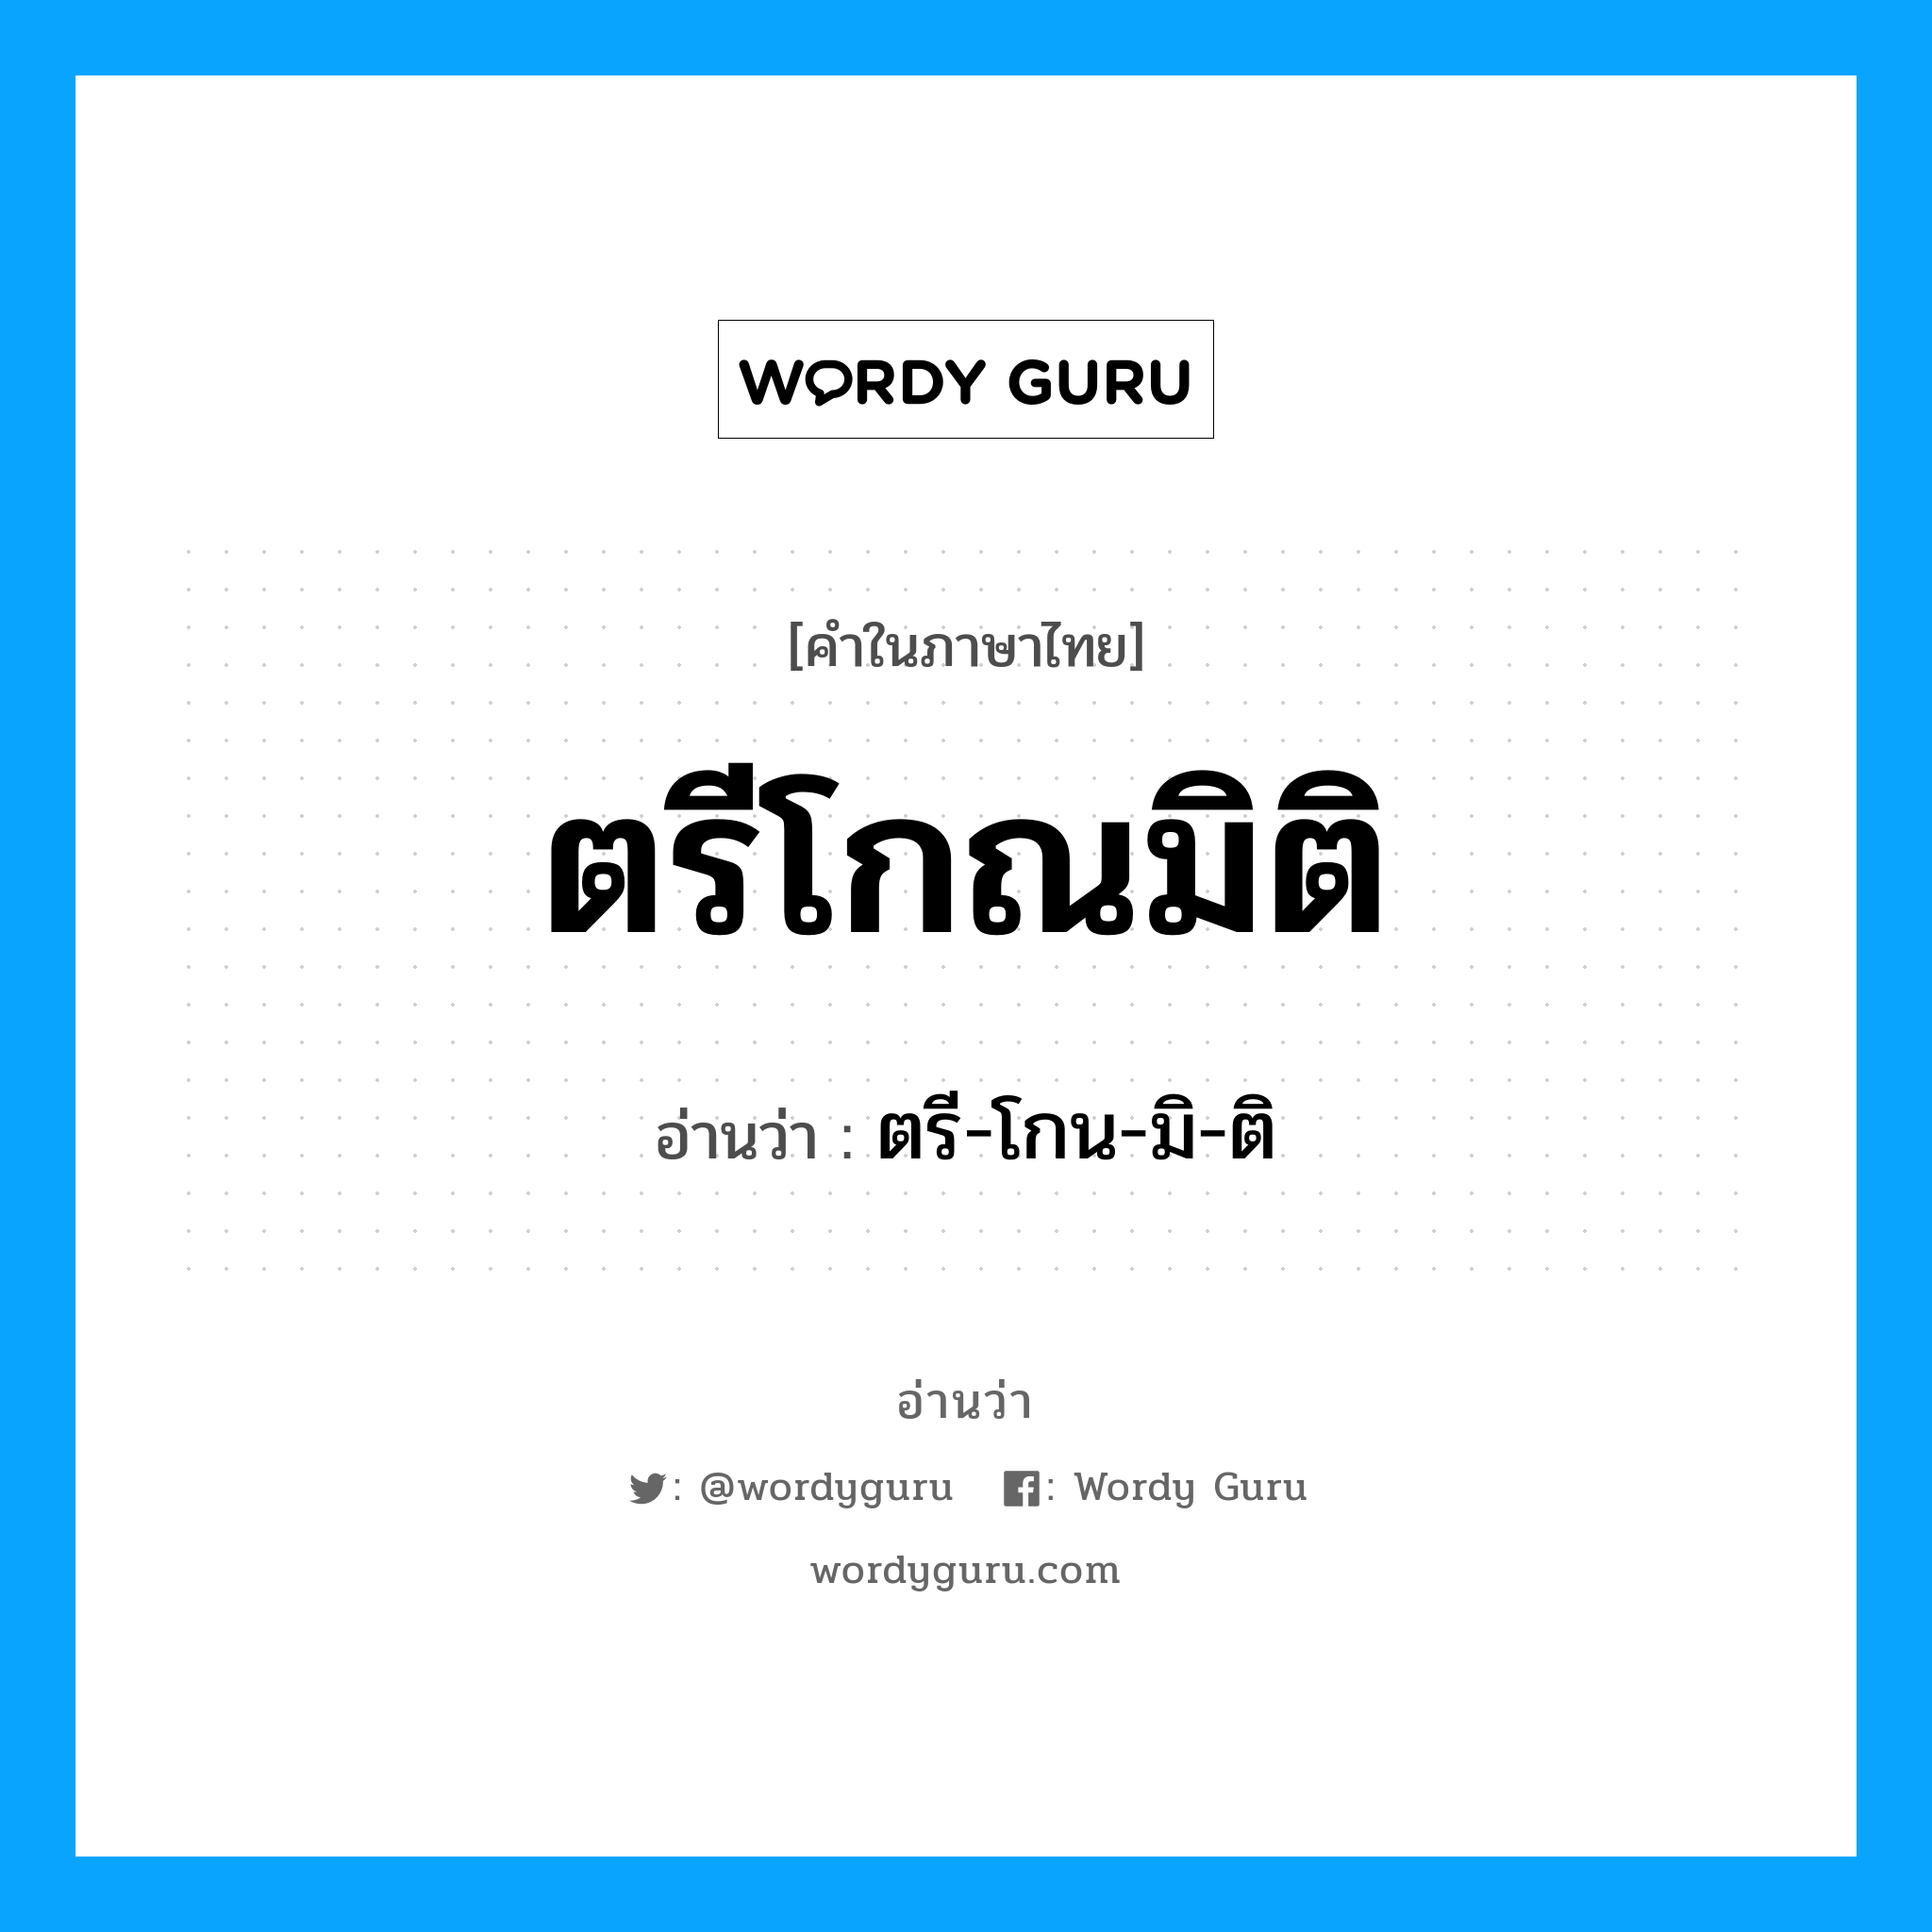 ตรี-โกน-มิ-ติ เป็นคำอ่านของคำไหน?, คำในภาษาไทย ตรี-โกน-มิ-ติ อ่านว่า ตรีโกณมิติ